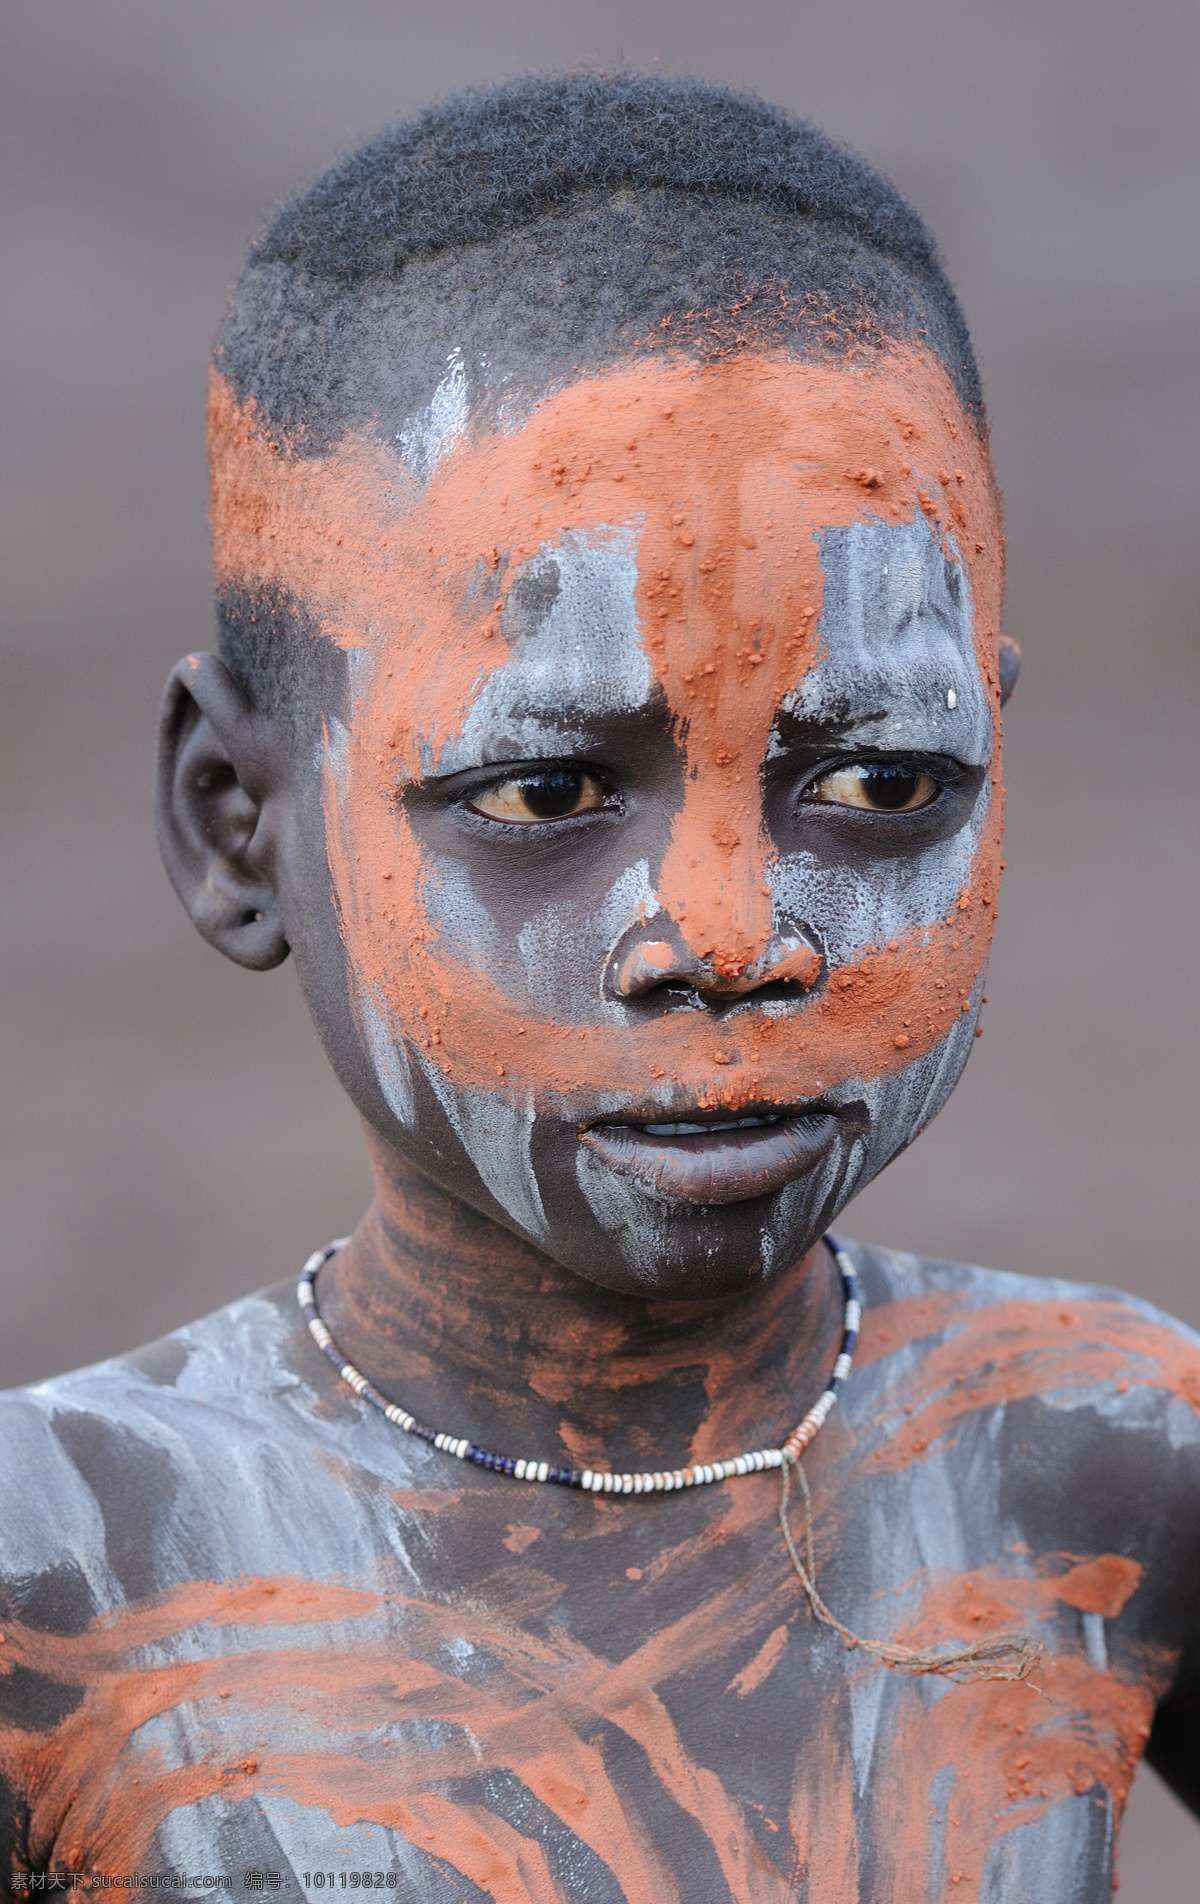 非洲 土著人 人物 黑人 非洲人 非洲土著人 彩绘 脸部彩绘 儿童图片 人物图片